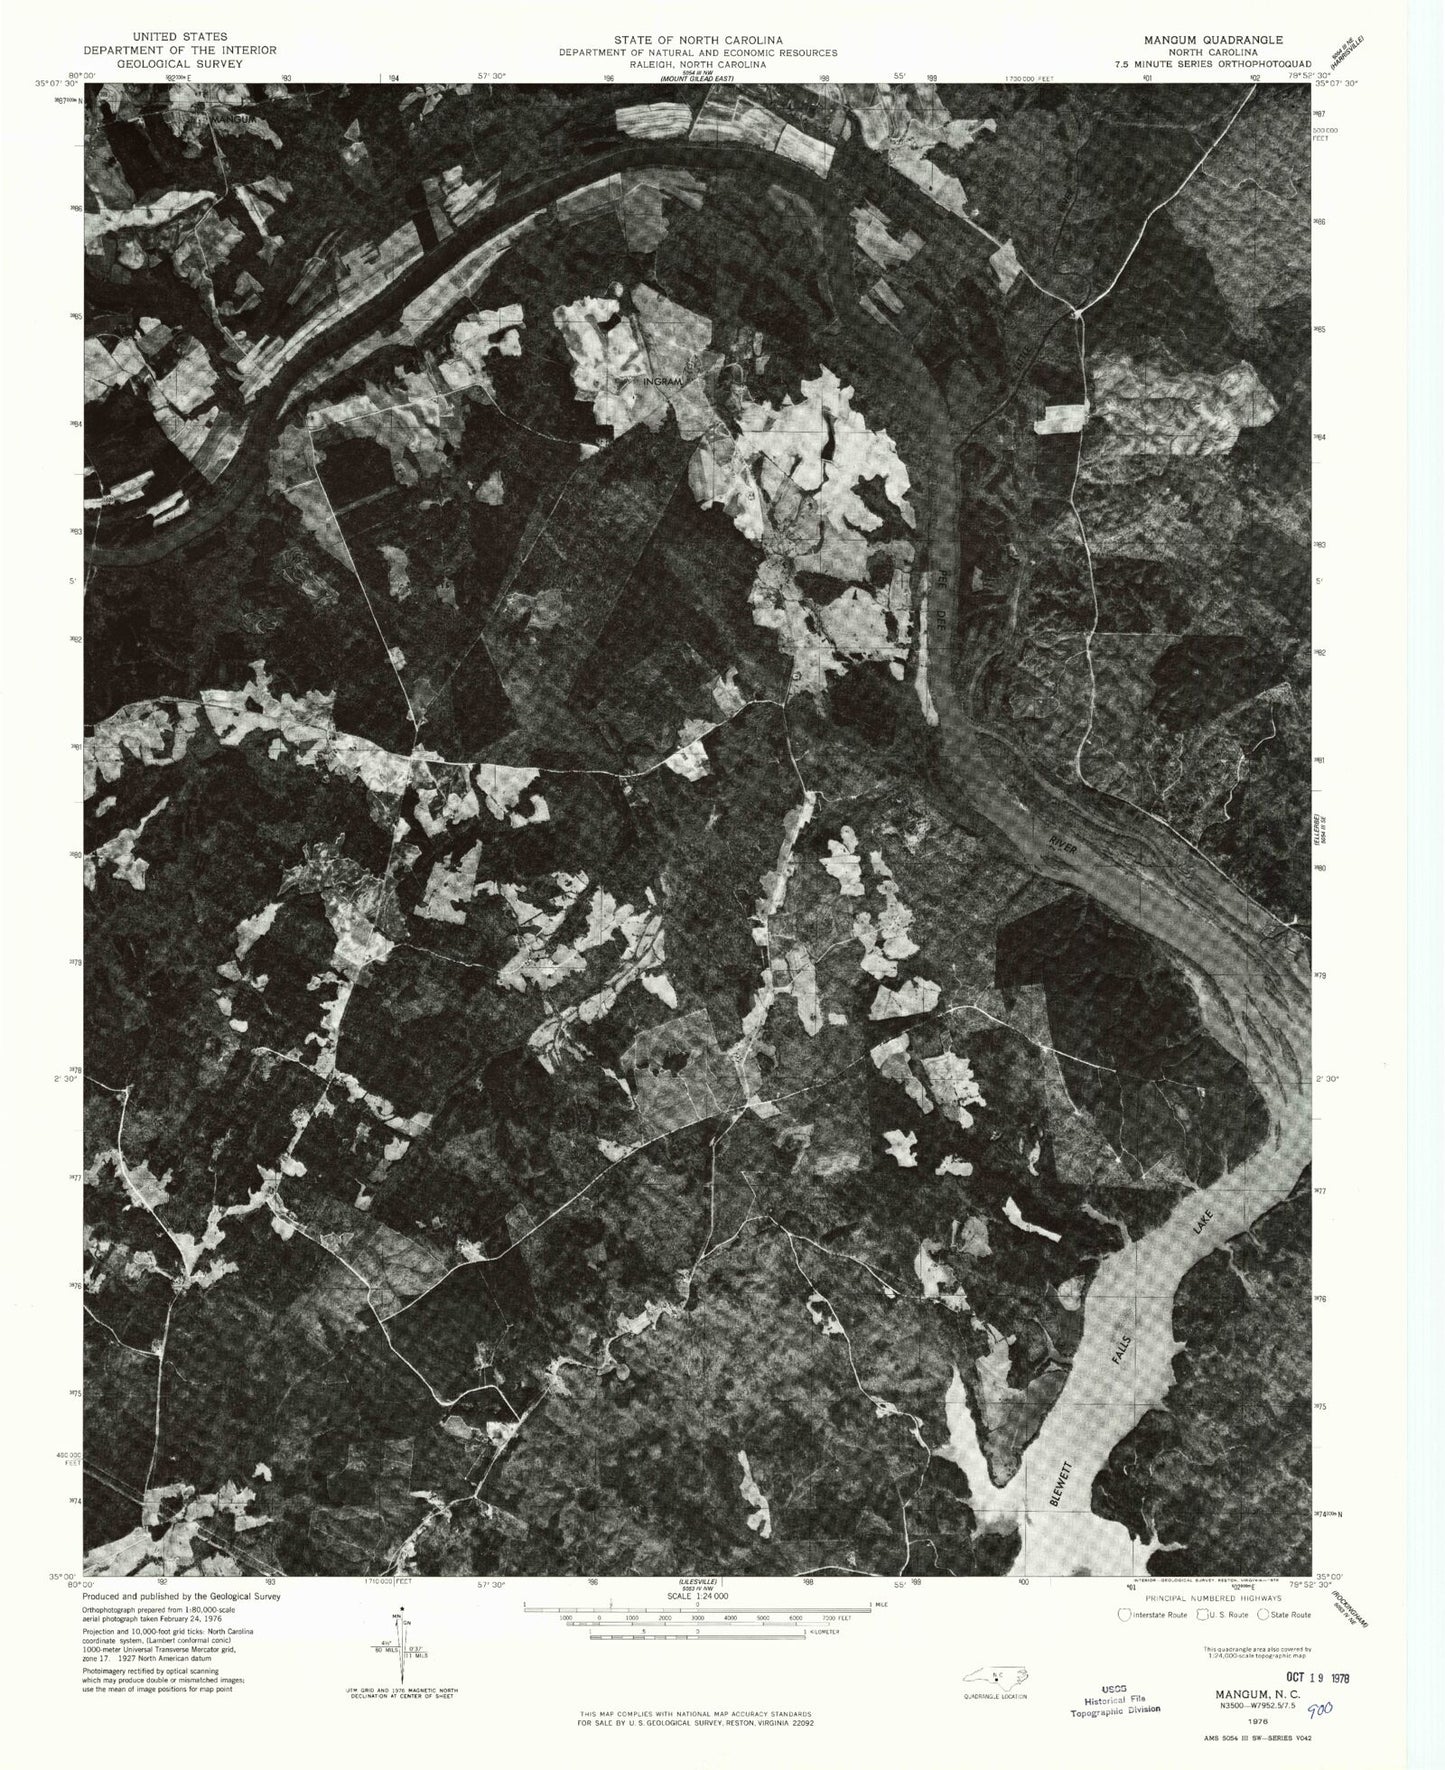 Classic USGS Mangum North Carolina 7.5'x7.5' Topo Map Image